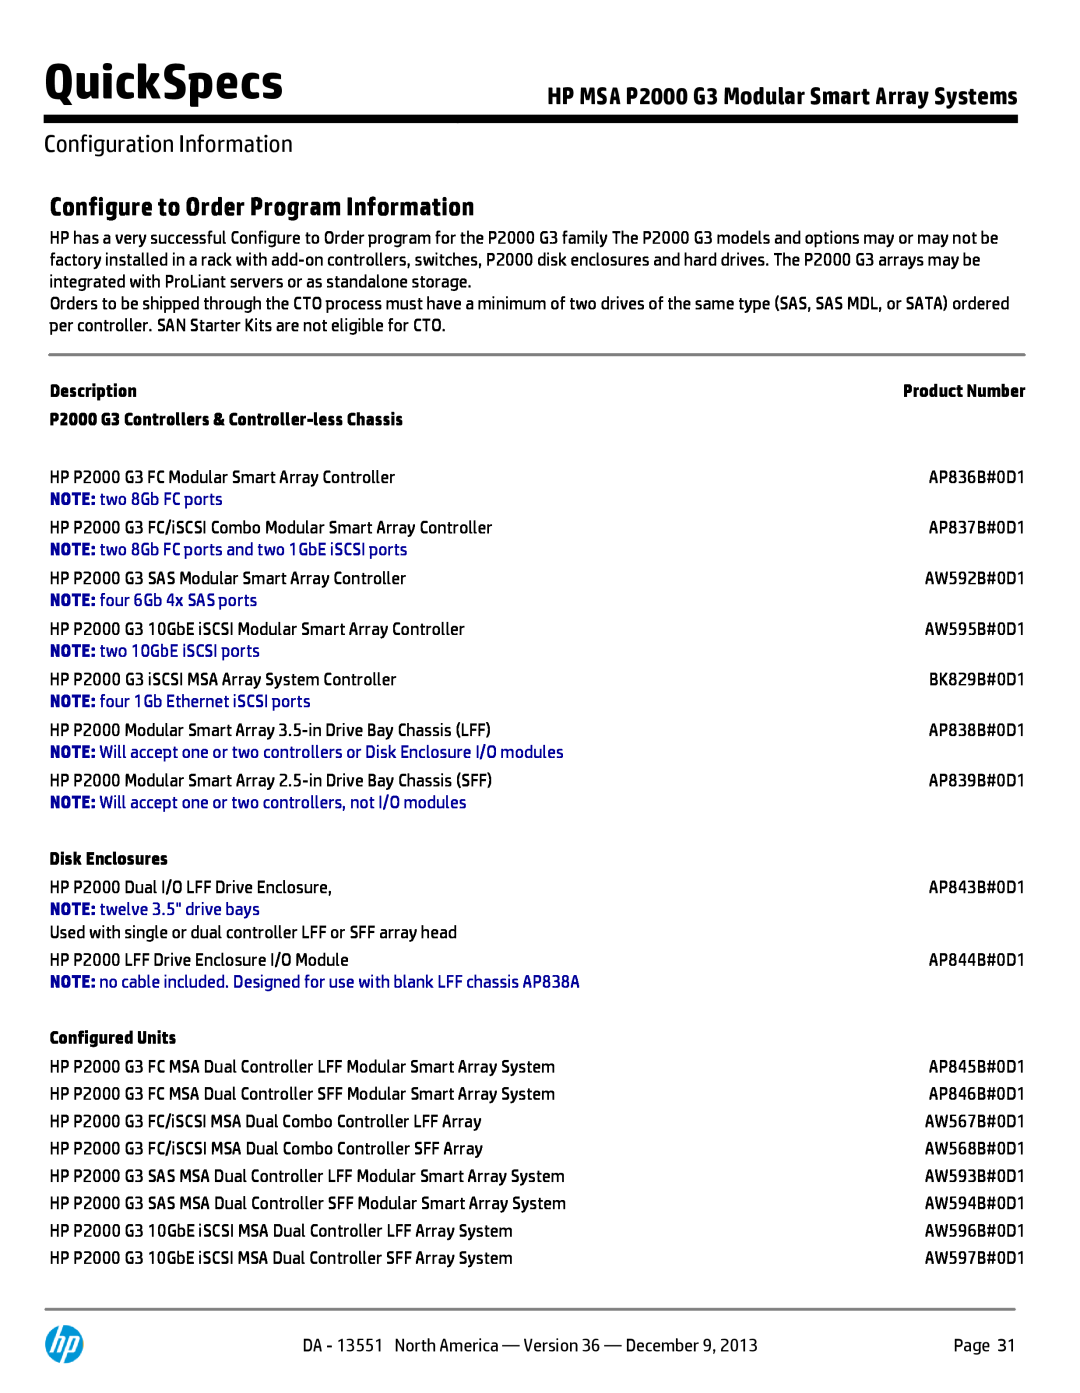 HP Drive Enclosure AP844B Configure to Order Program Information, Configuration Information, Description, Configured Units 